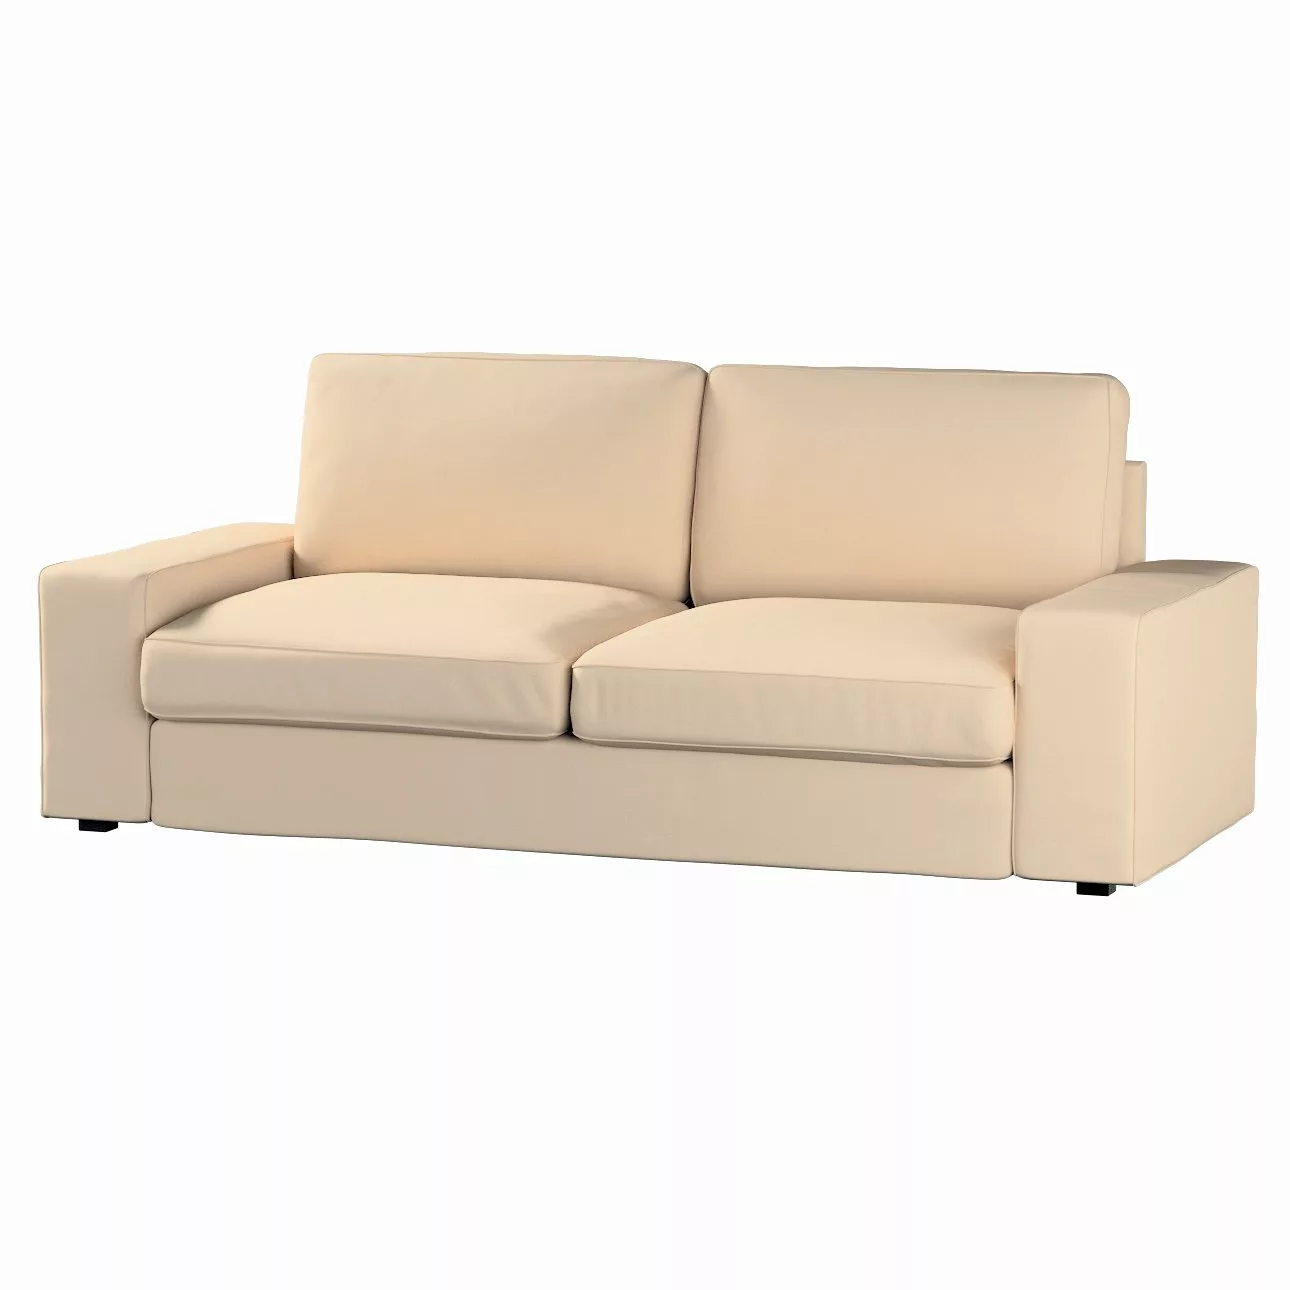 Bezug für Kivik 3-Sitzer Sofa, creme-beige, Bezug für Sofa Kivik 3-Sitzer, günstig online kaufen